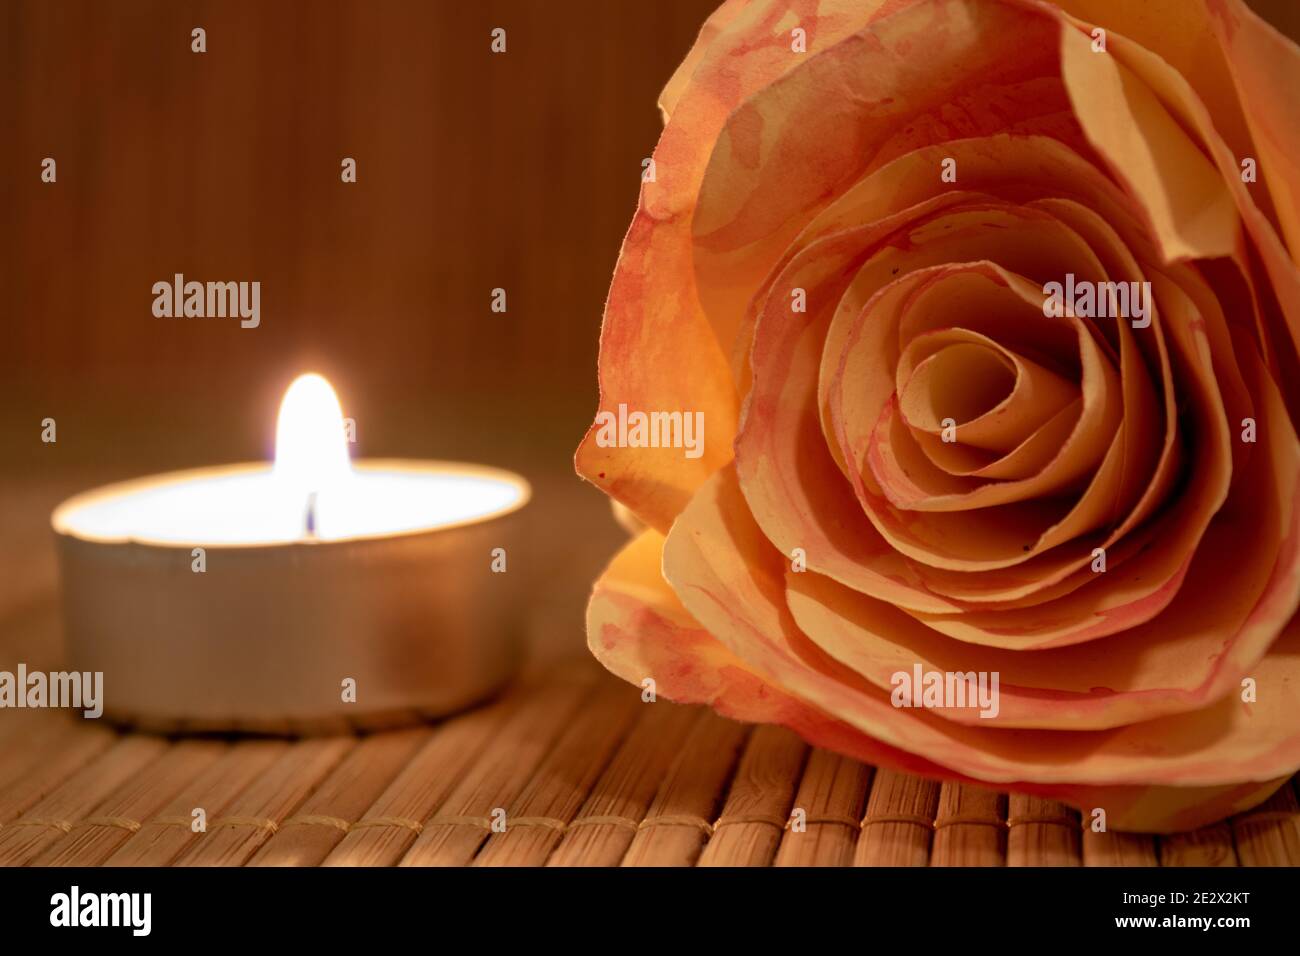 Rosenblüte und brennende Kerze. Rosenblüte aus Papier mit Teelicht auf Holztisch mit Kopierfläche liegend. Romantisches Konzept Stockfoto